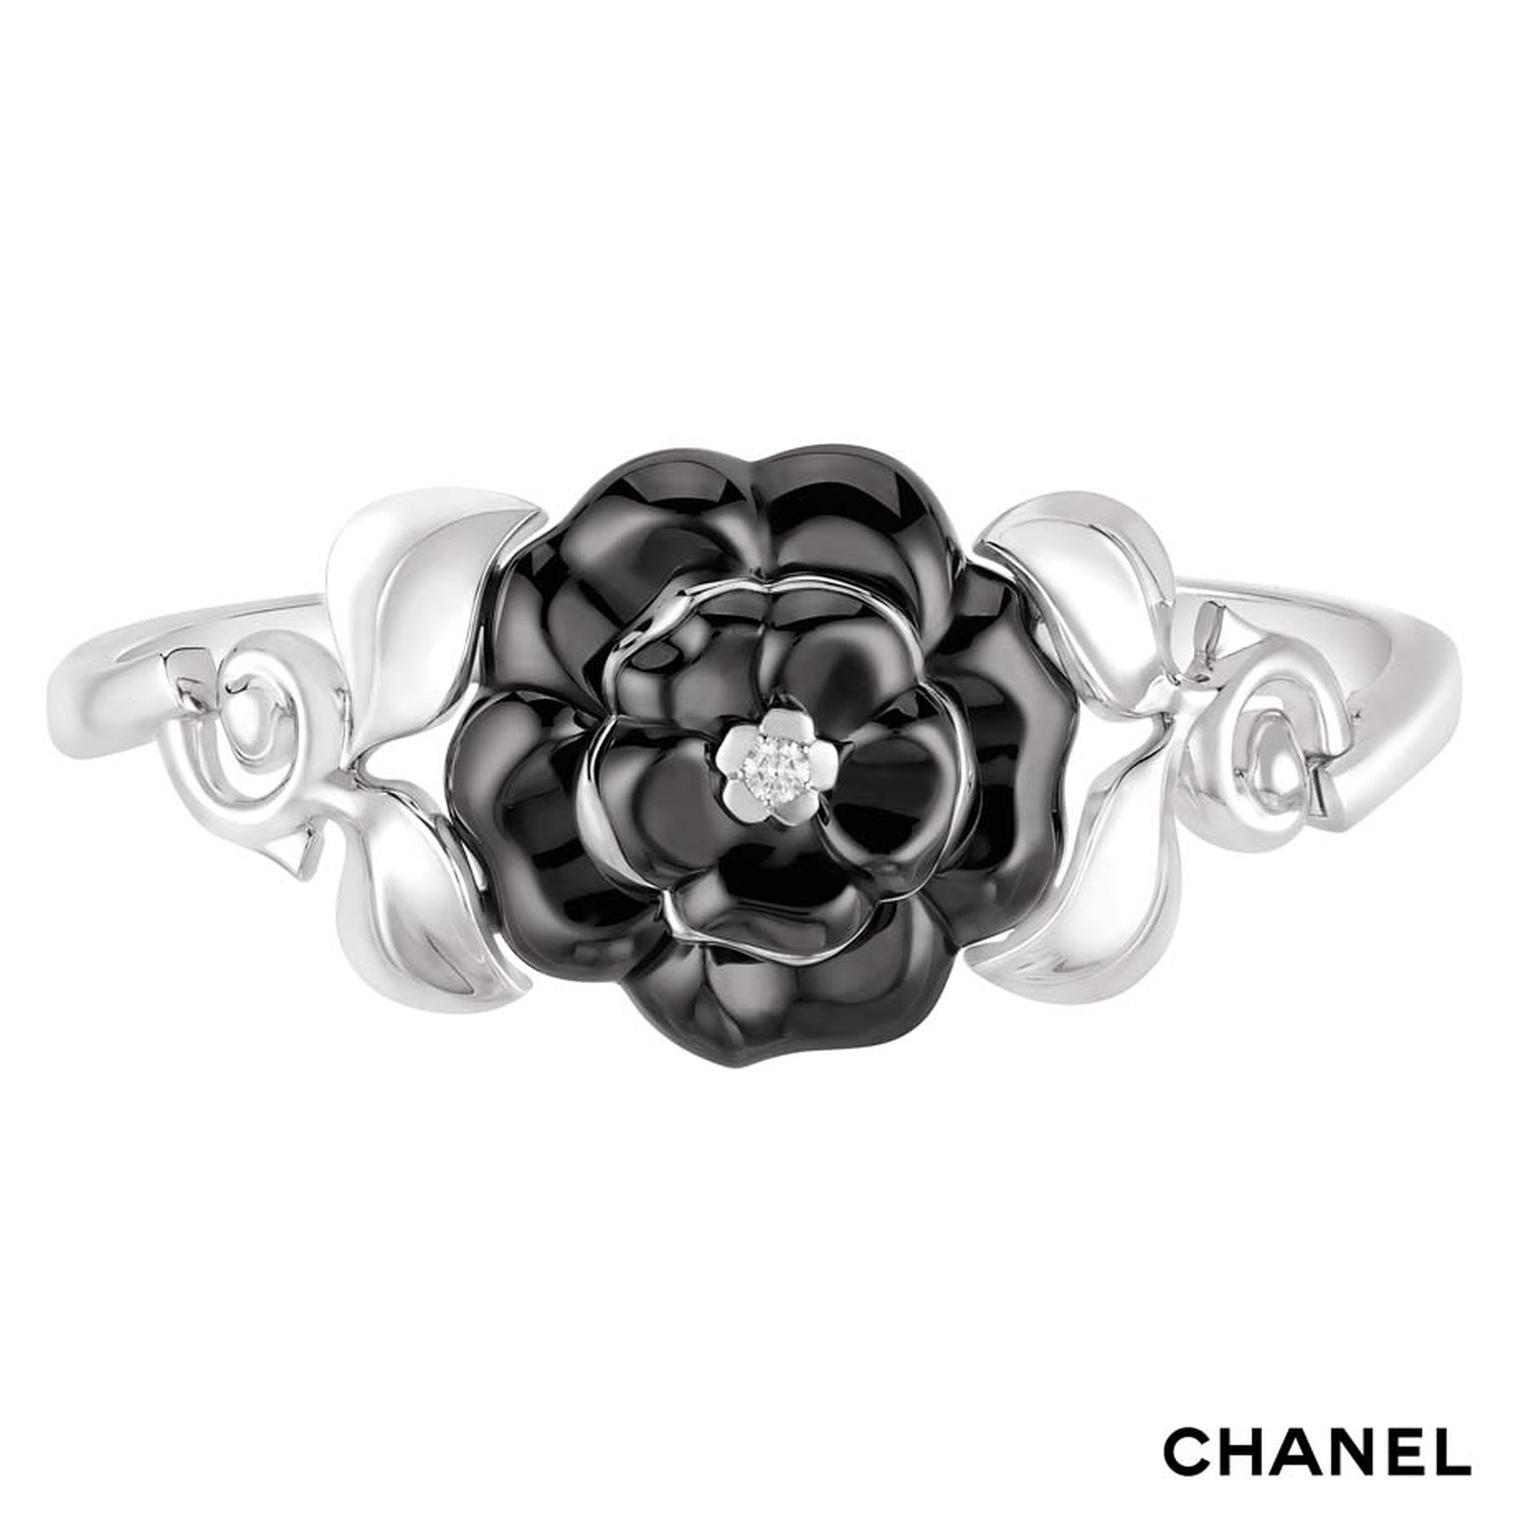 Chanel Camélia Galbé white gold bracelet with a black